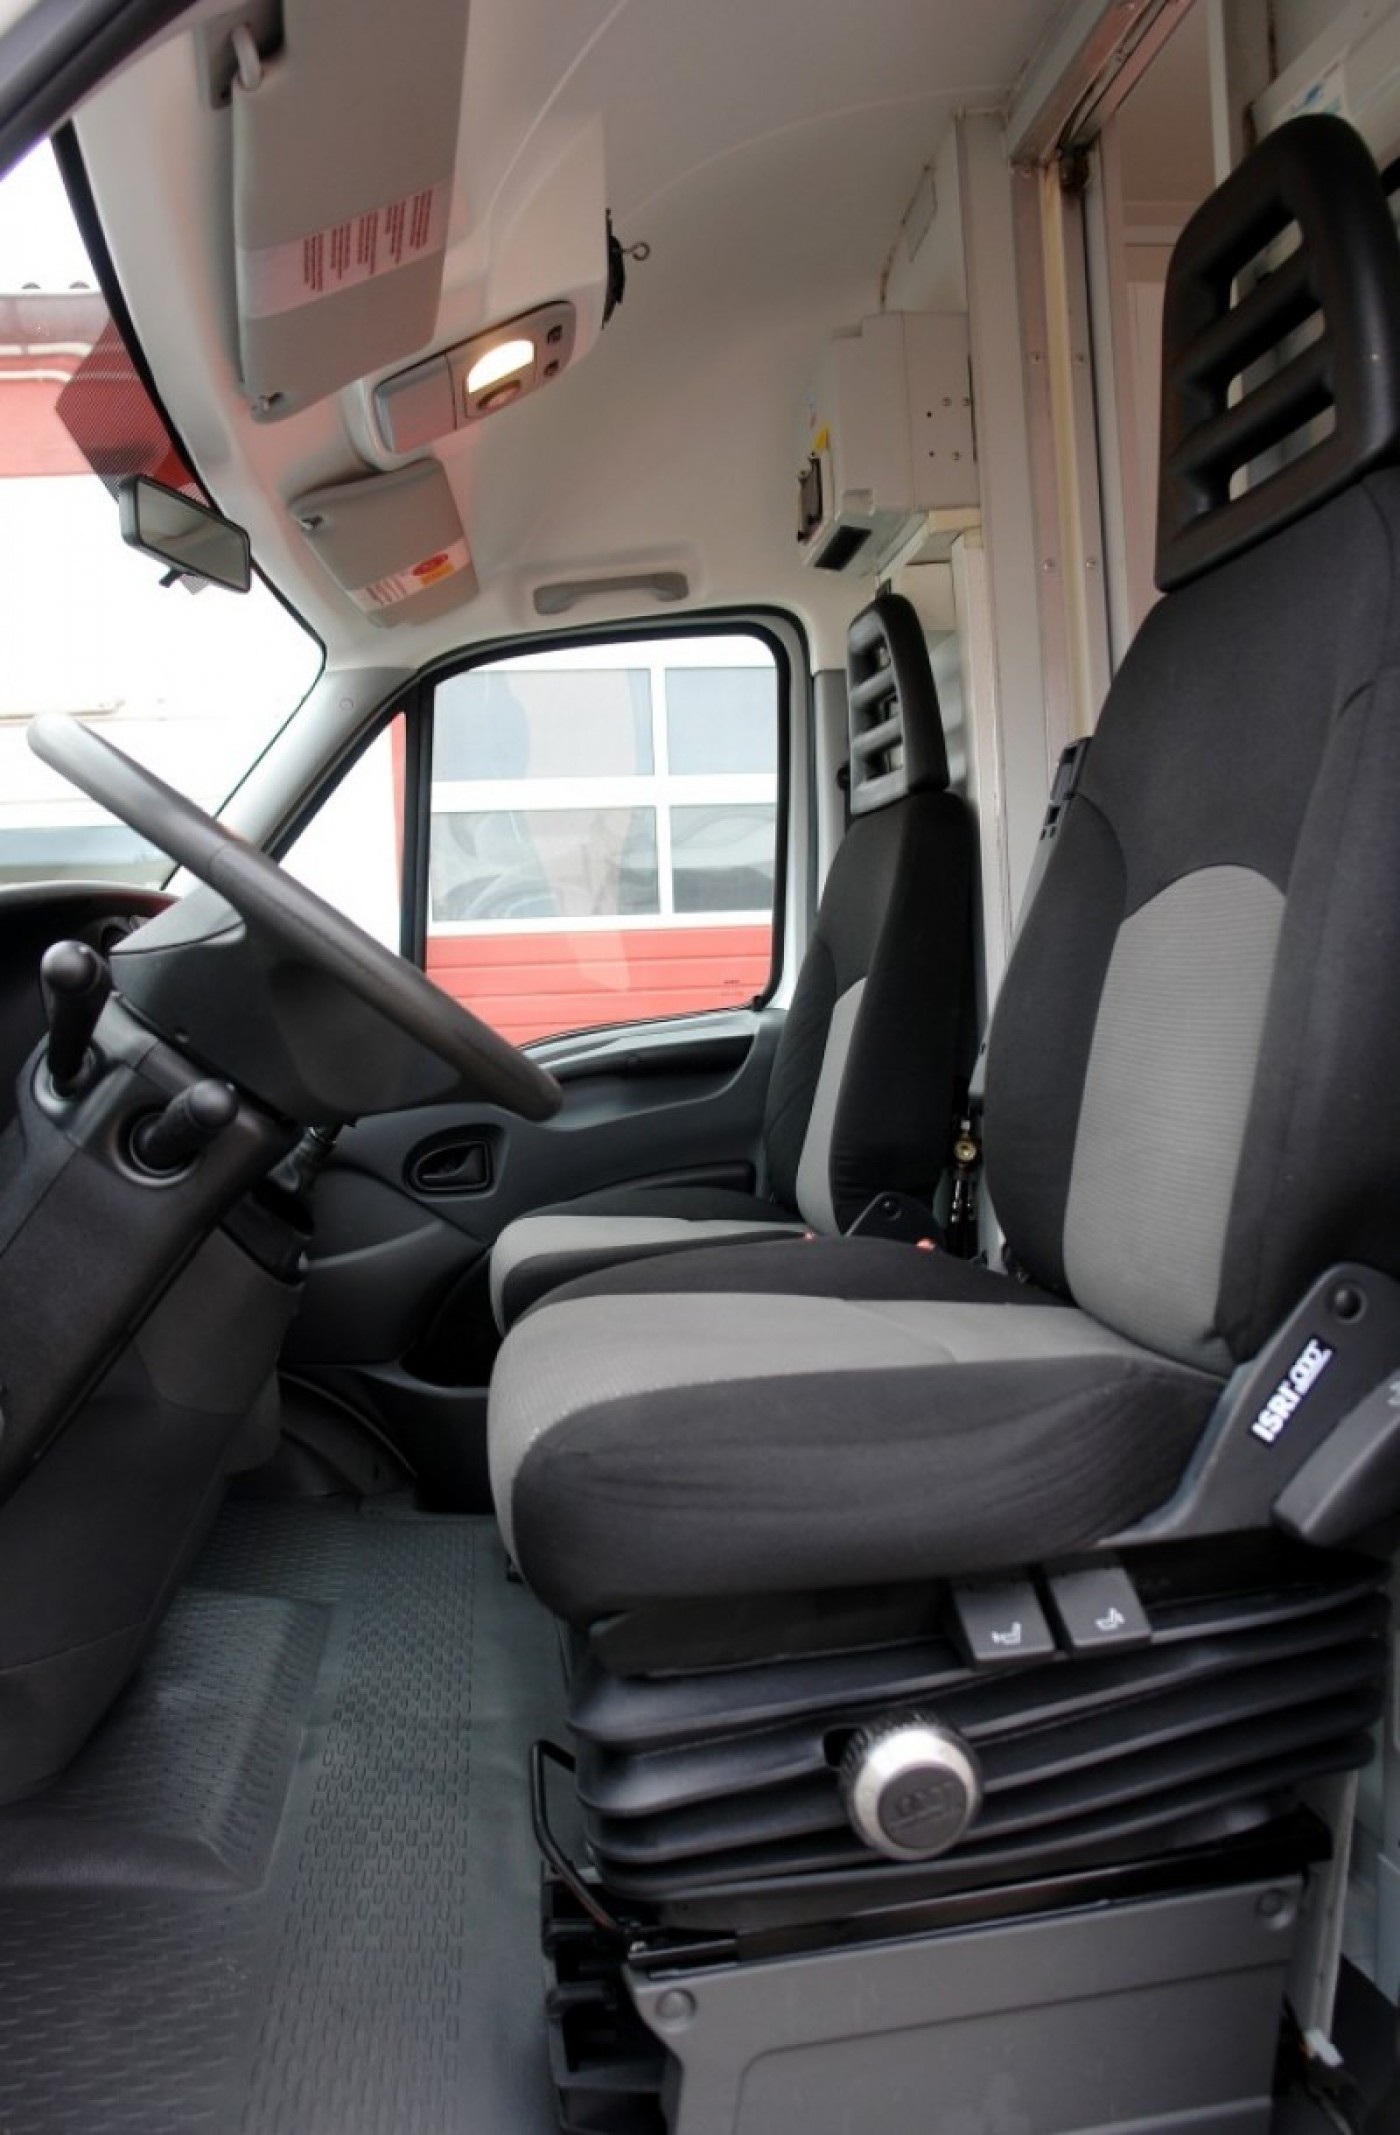 Iveco Iveco Daily 50C15 Тонар (Киоск / ларек на колесах) с морозильными камерами / автомобиль для продажи / длинна 5м / TÜV!